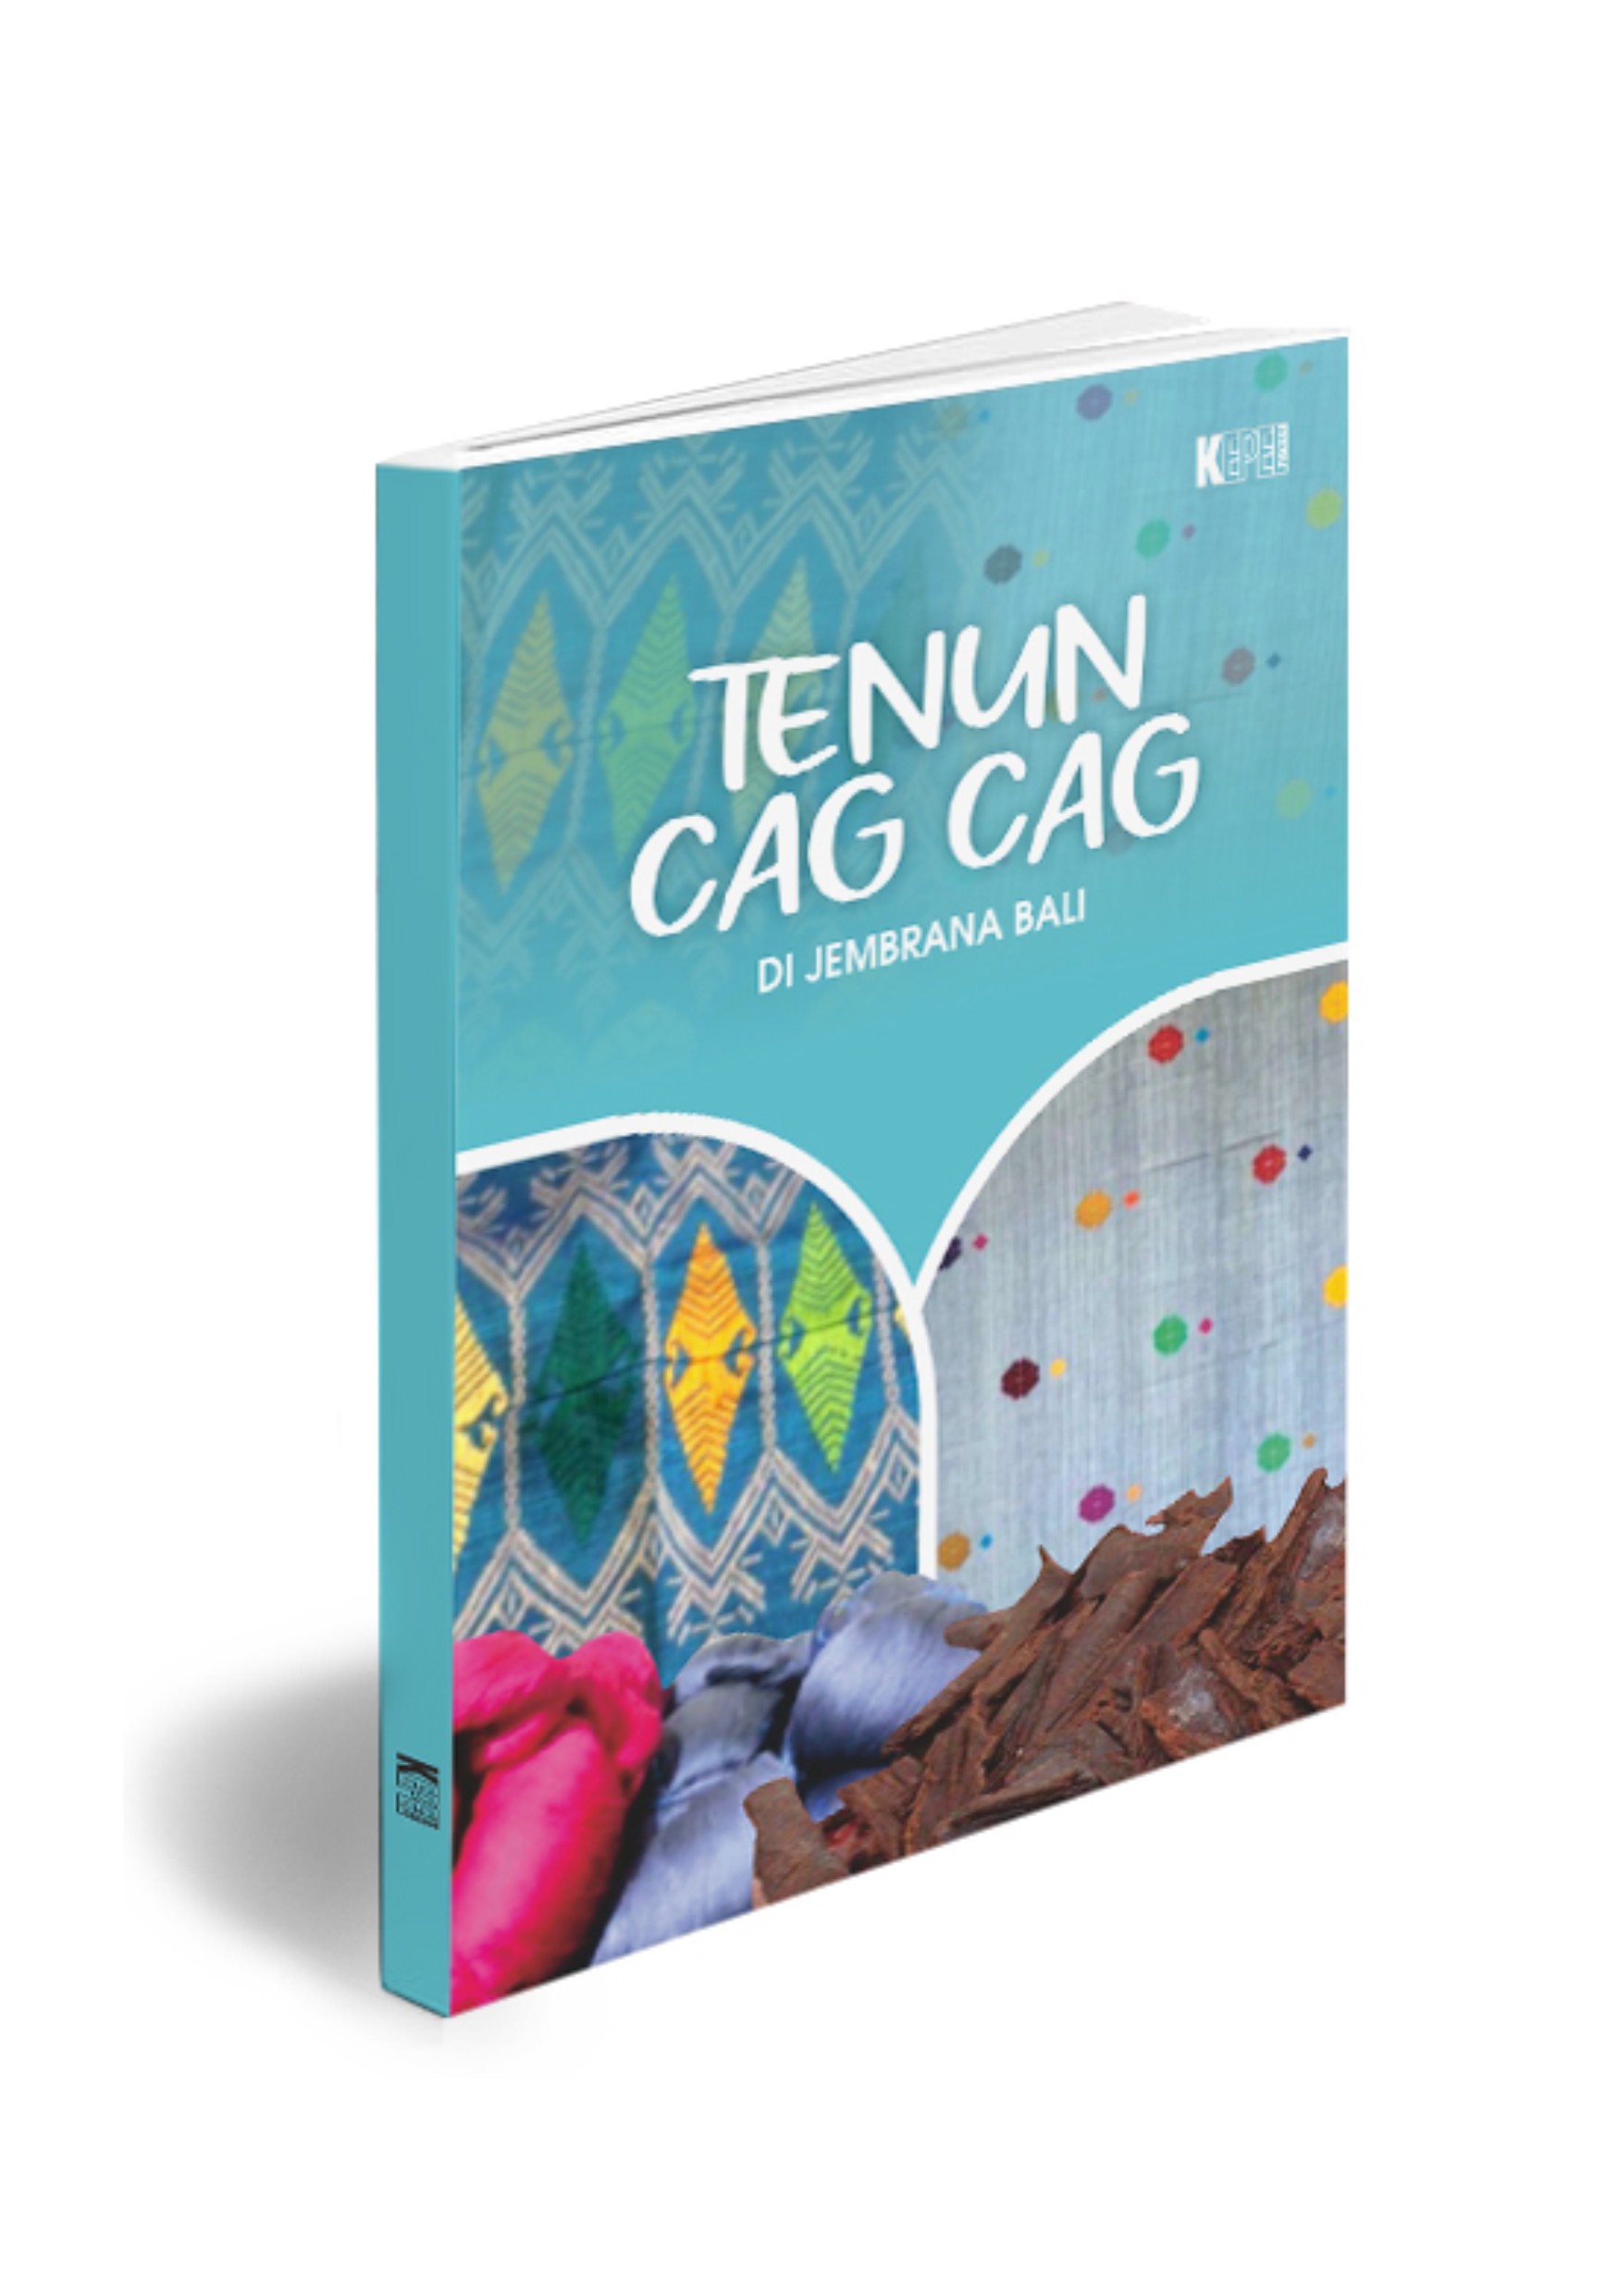 TENUN Cag Cag 1